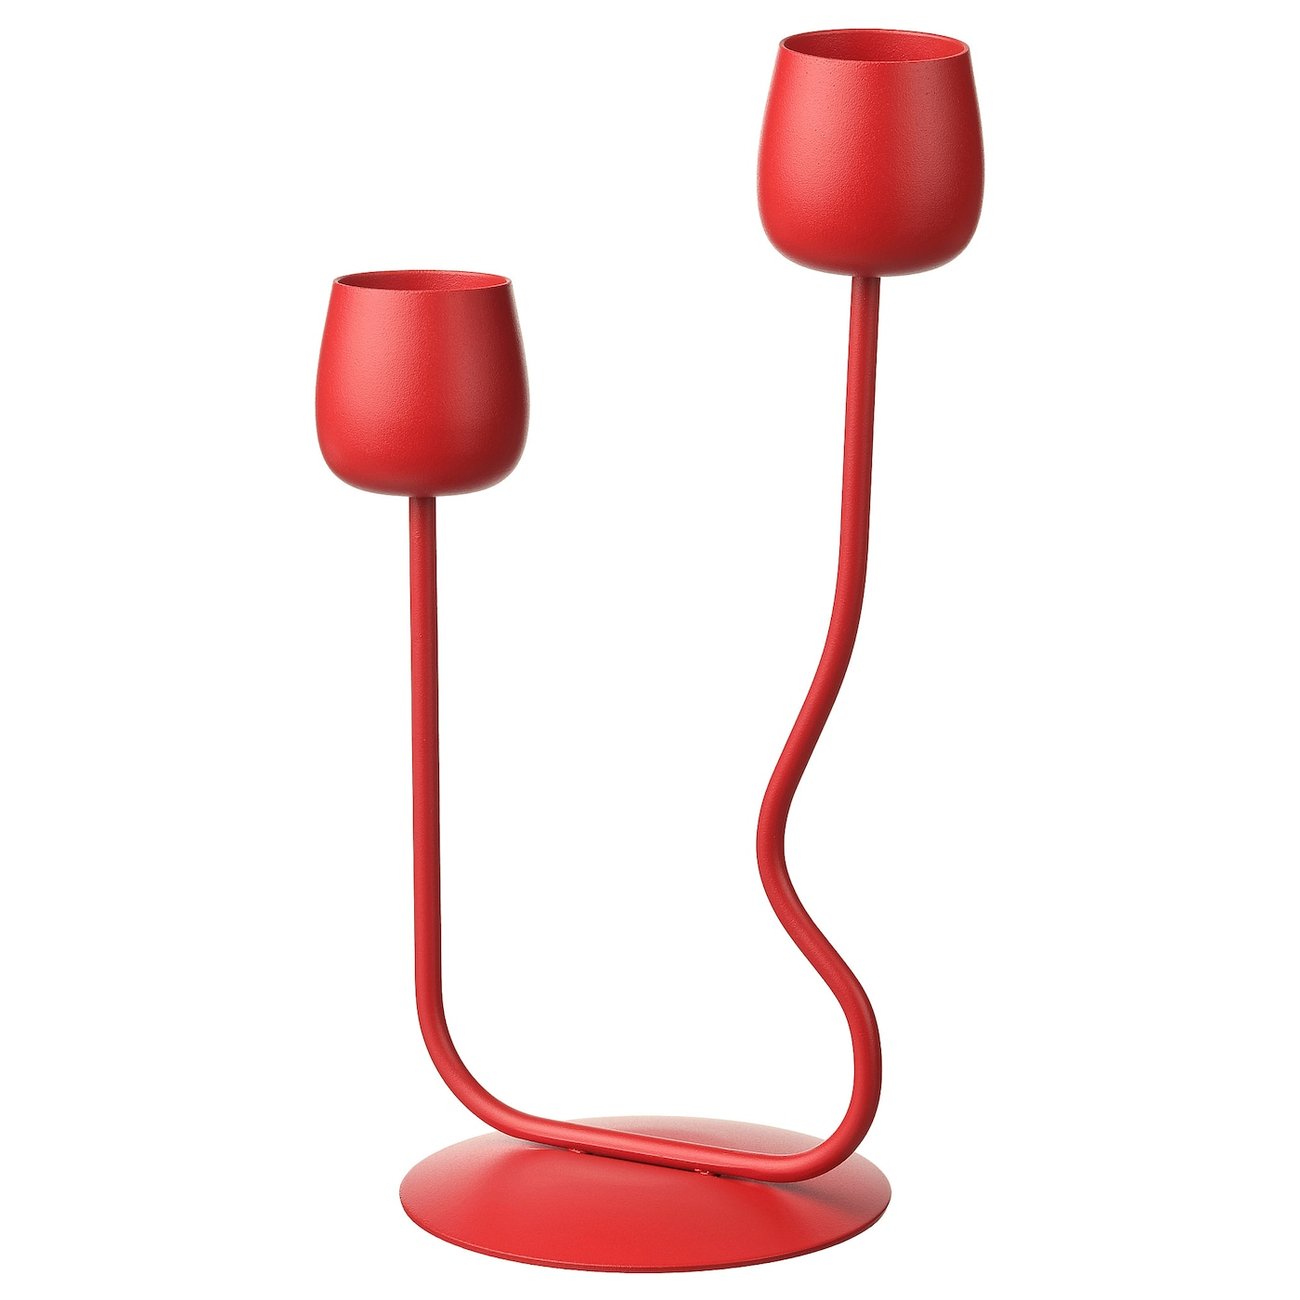 SILVERPÄRON Kerzen- oder Teelichthalter - leuchtend rot 29 cm